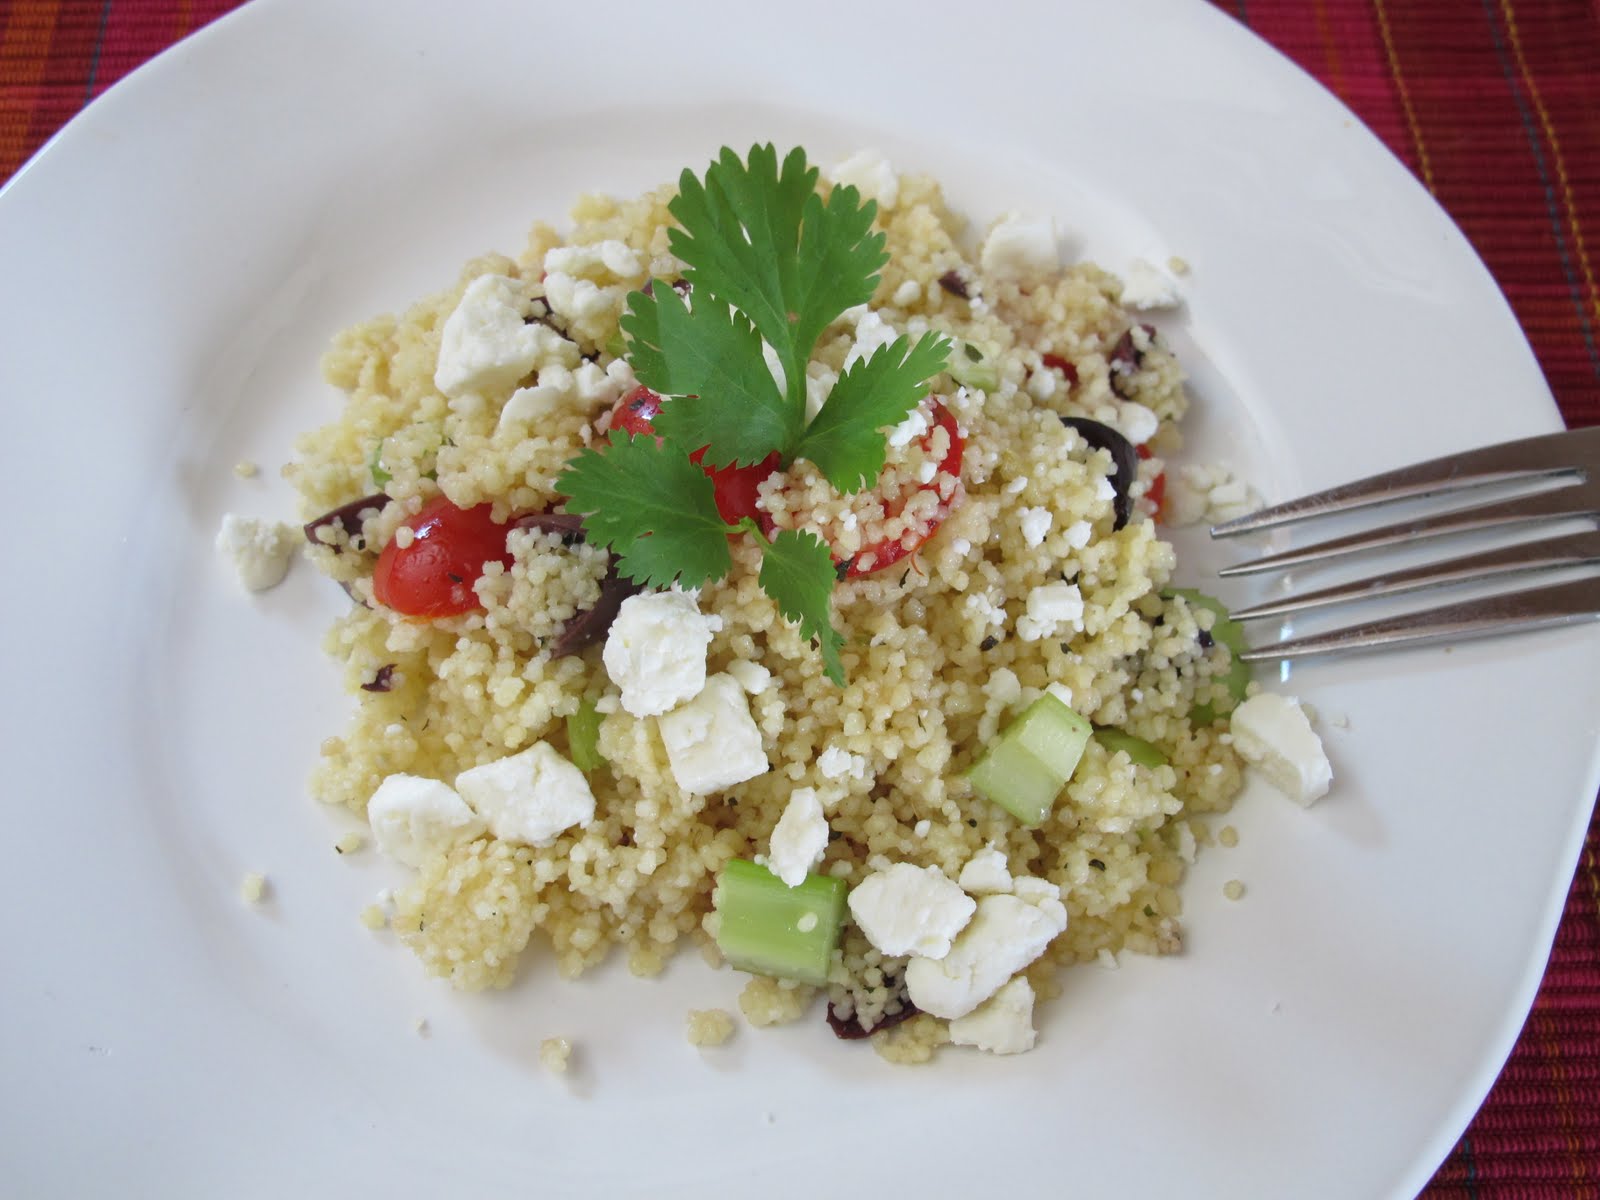 Greek Couscous Salad